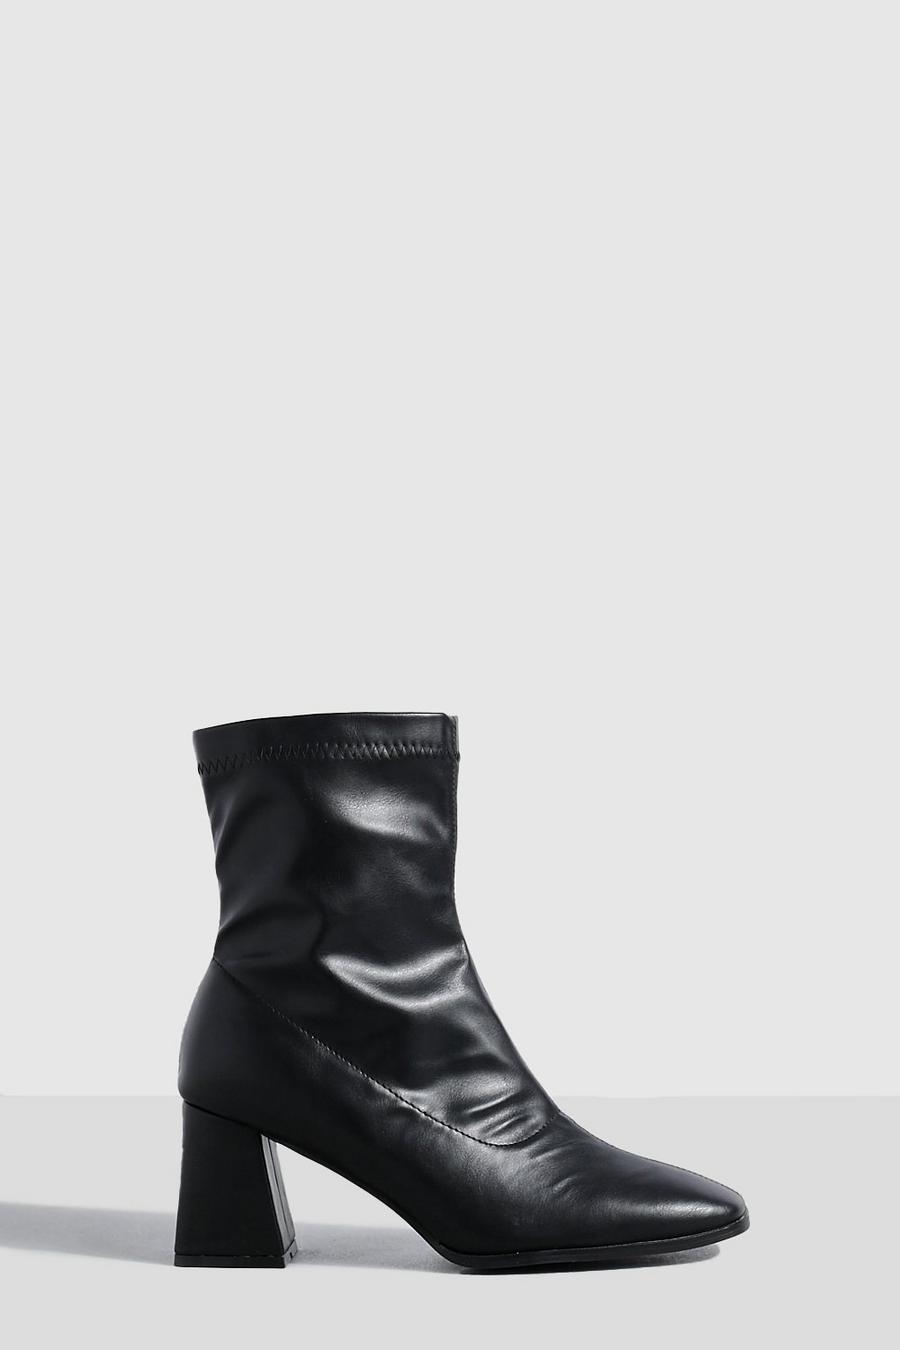 Botas calcetín de holgura ancha y cuero sintético con tacón acampanado, Black image number 1